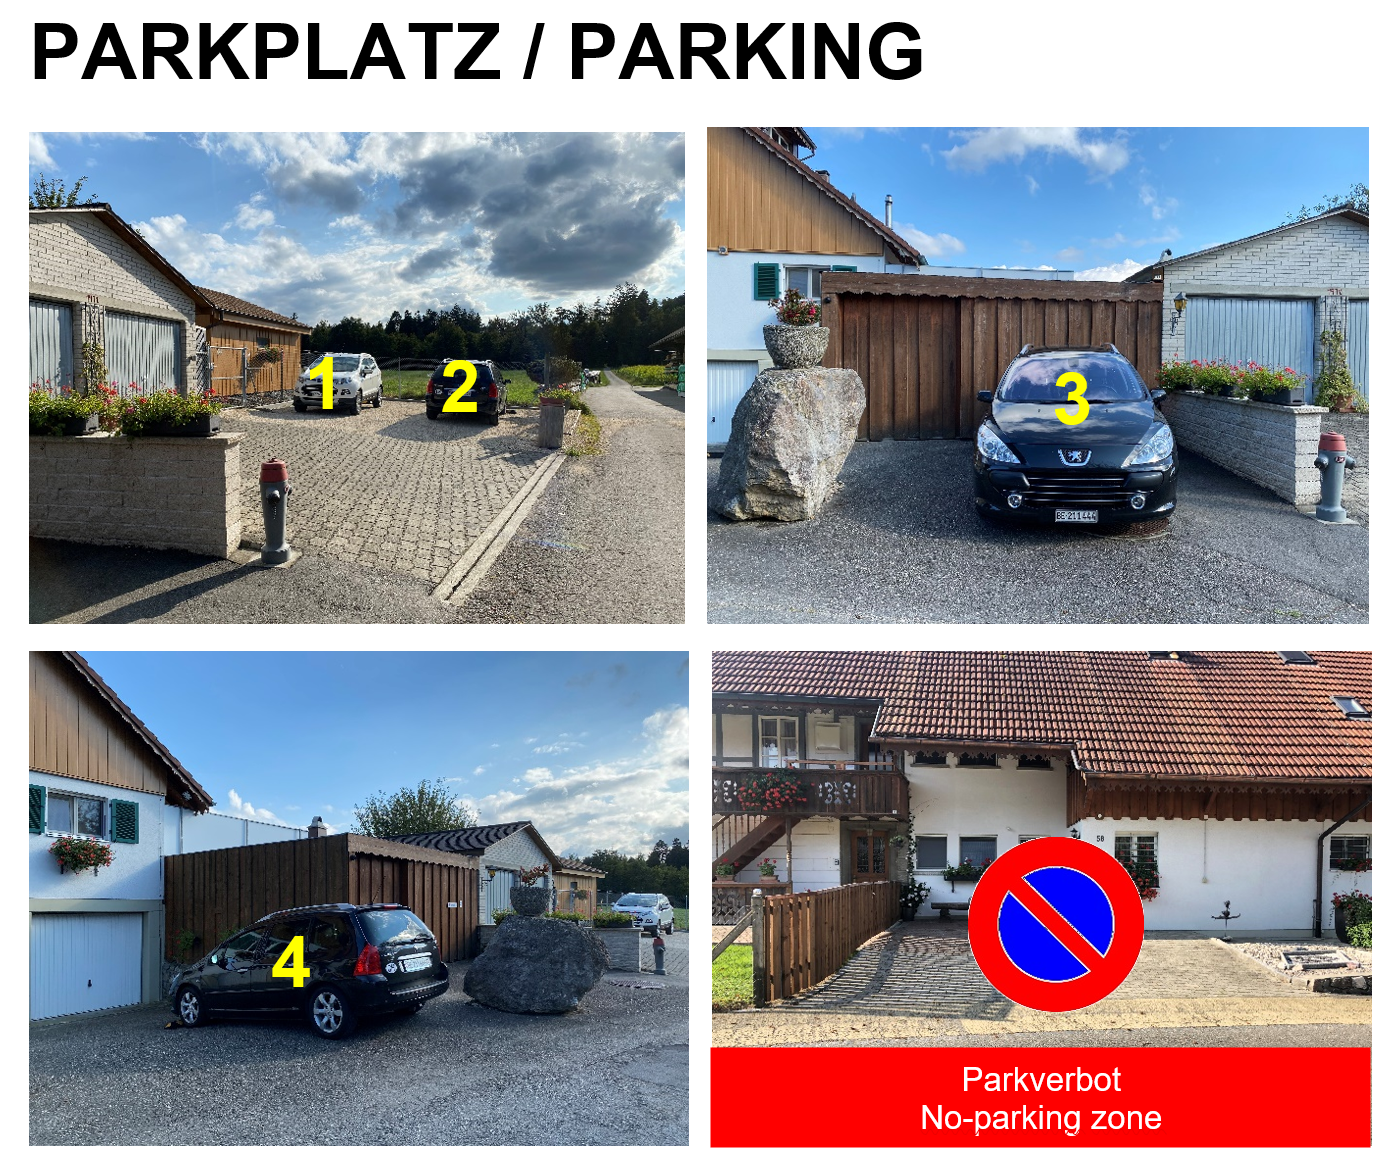 Parkplatz, pro Wohnung 1 zugewiesener Parkplatz